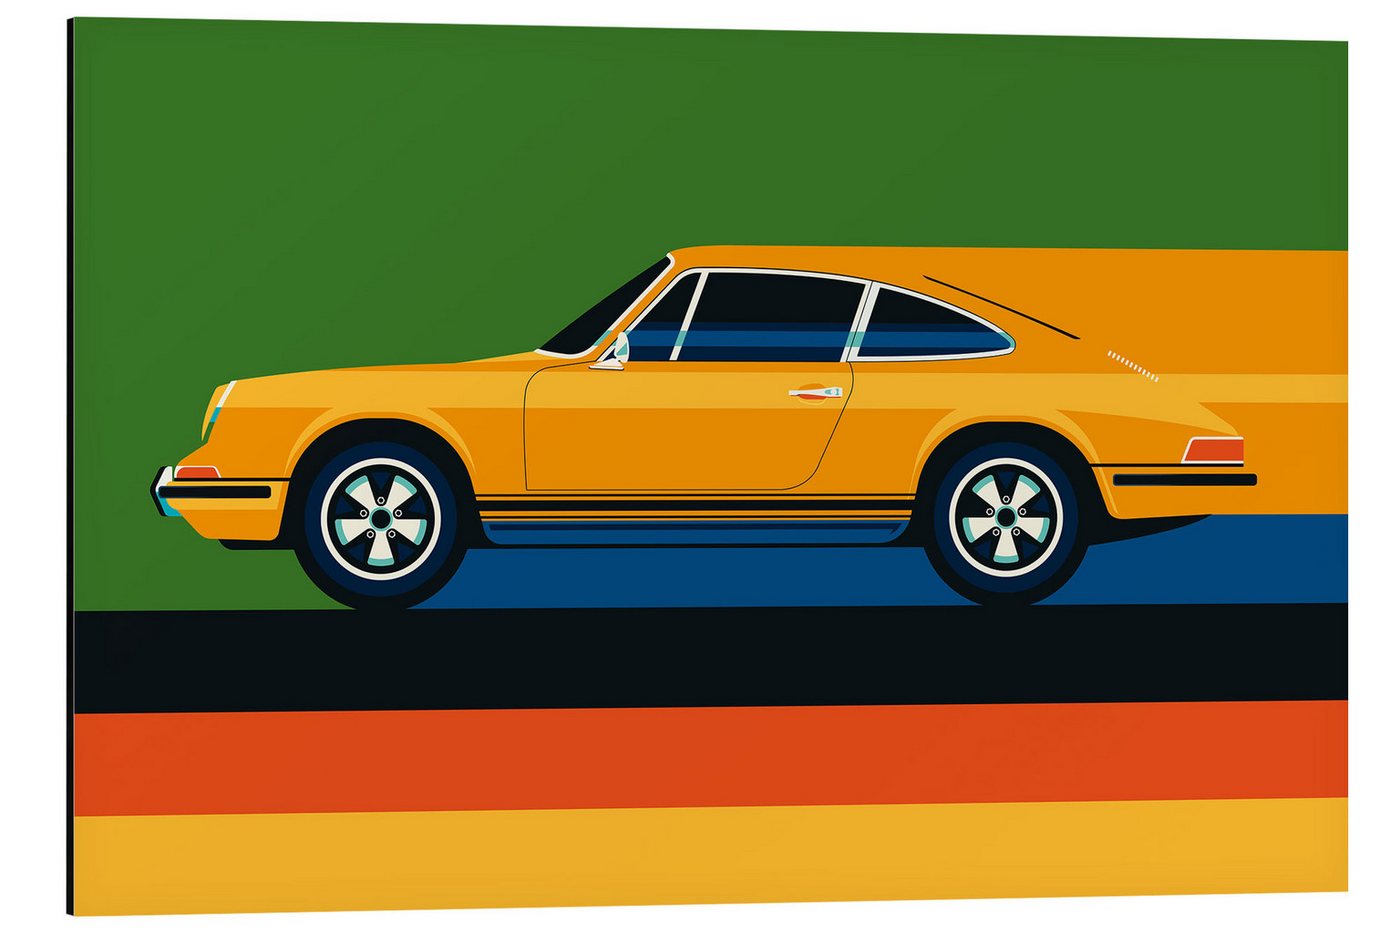 Posterlounge Alu-Dibond-Druck Bo Lundberg, Orange vintage sports car side, Lounge Illustration von Posterlounge